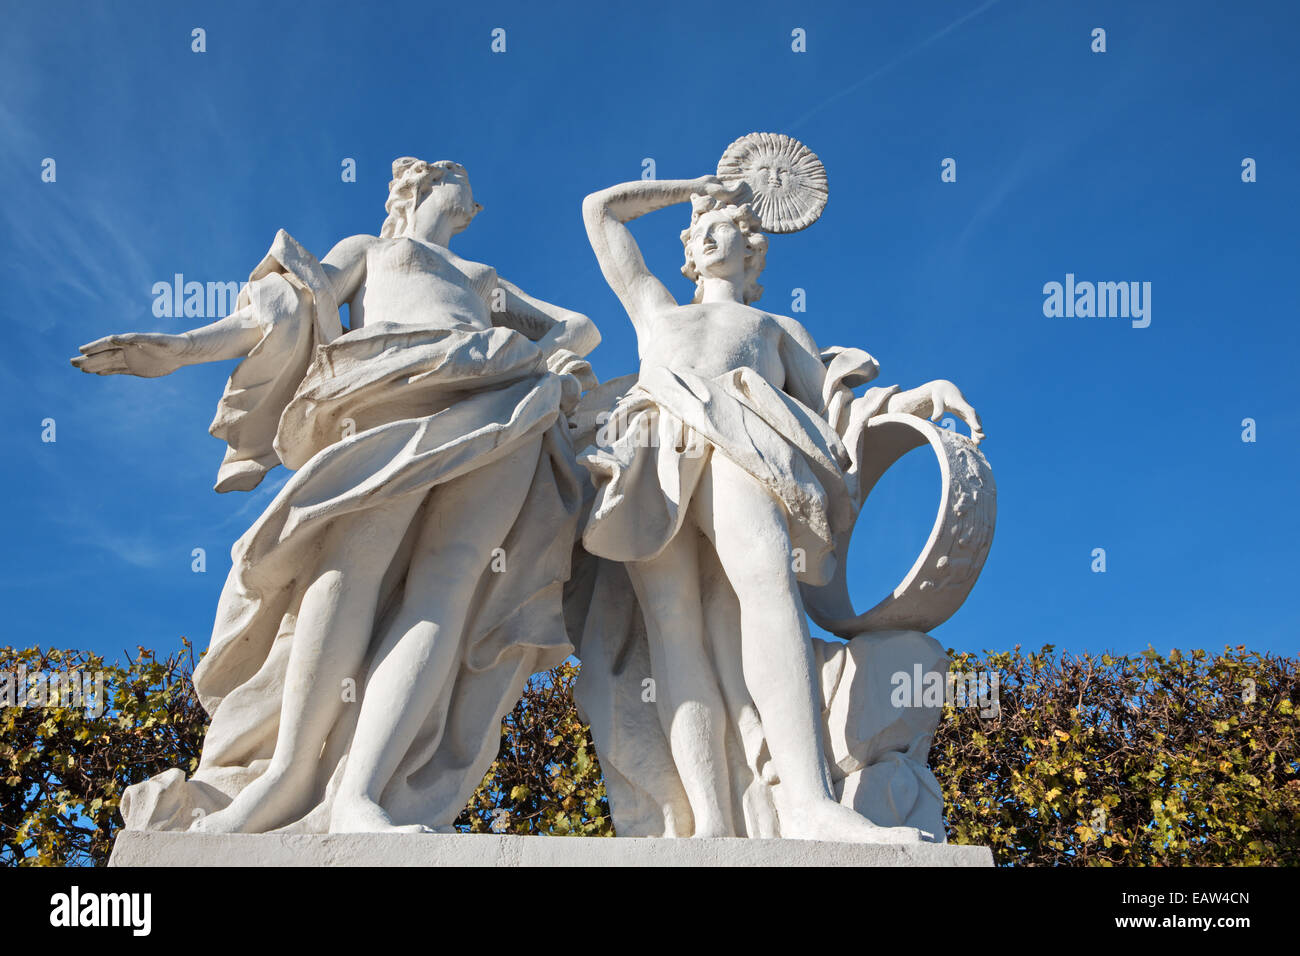 Wien - die Skulptur in den Gärten des Schlosses Belvedere mit der Szene aus der Mythologie. Stockfoto